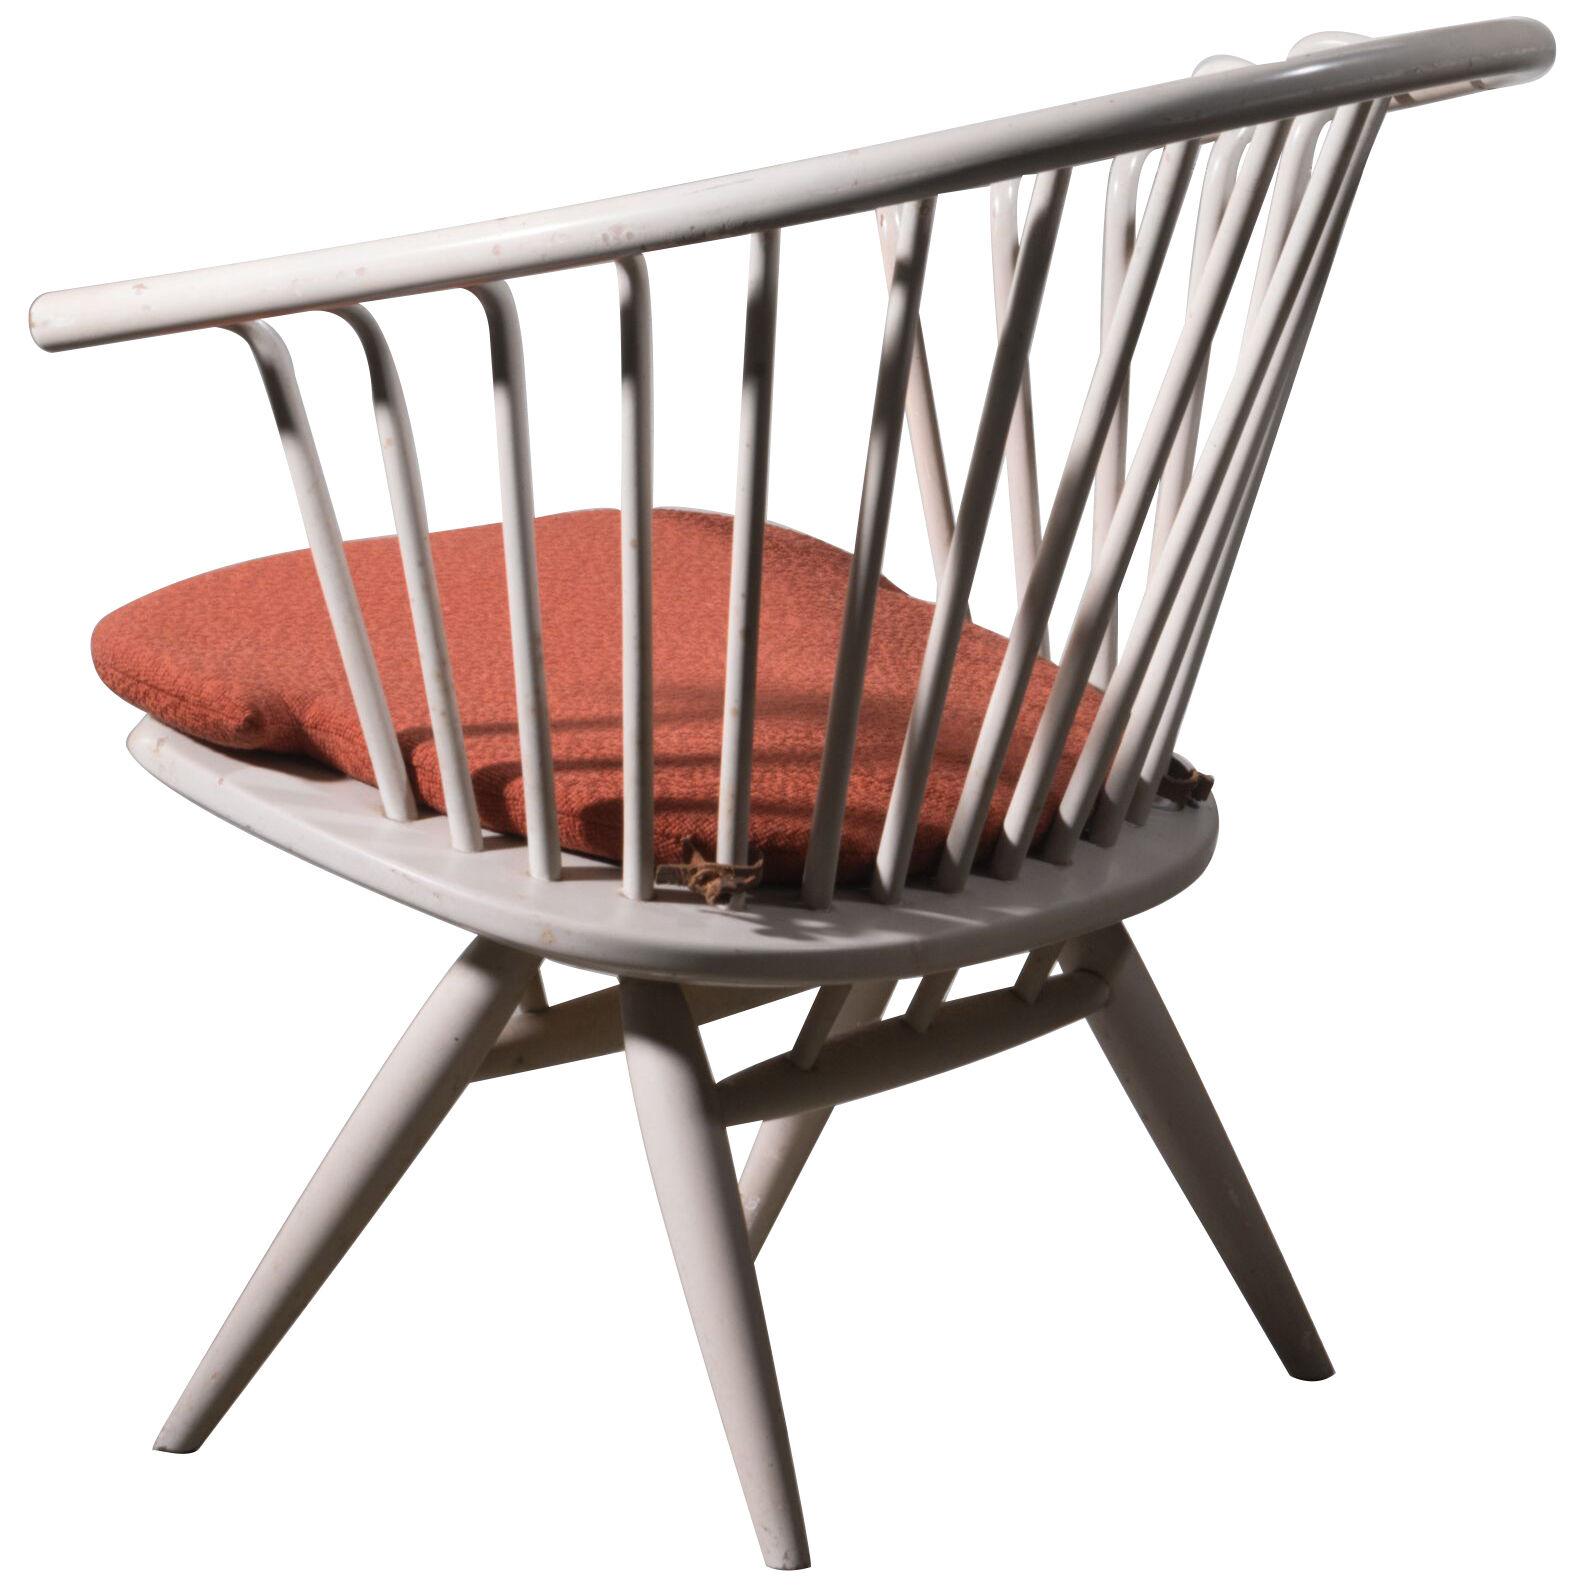 Crinolette chair by Ilmari Tapiovaara, labeled Asko